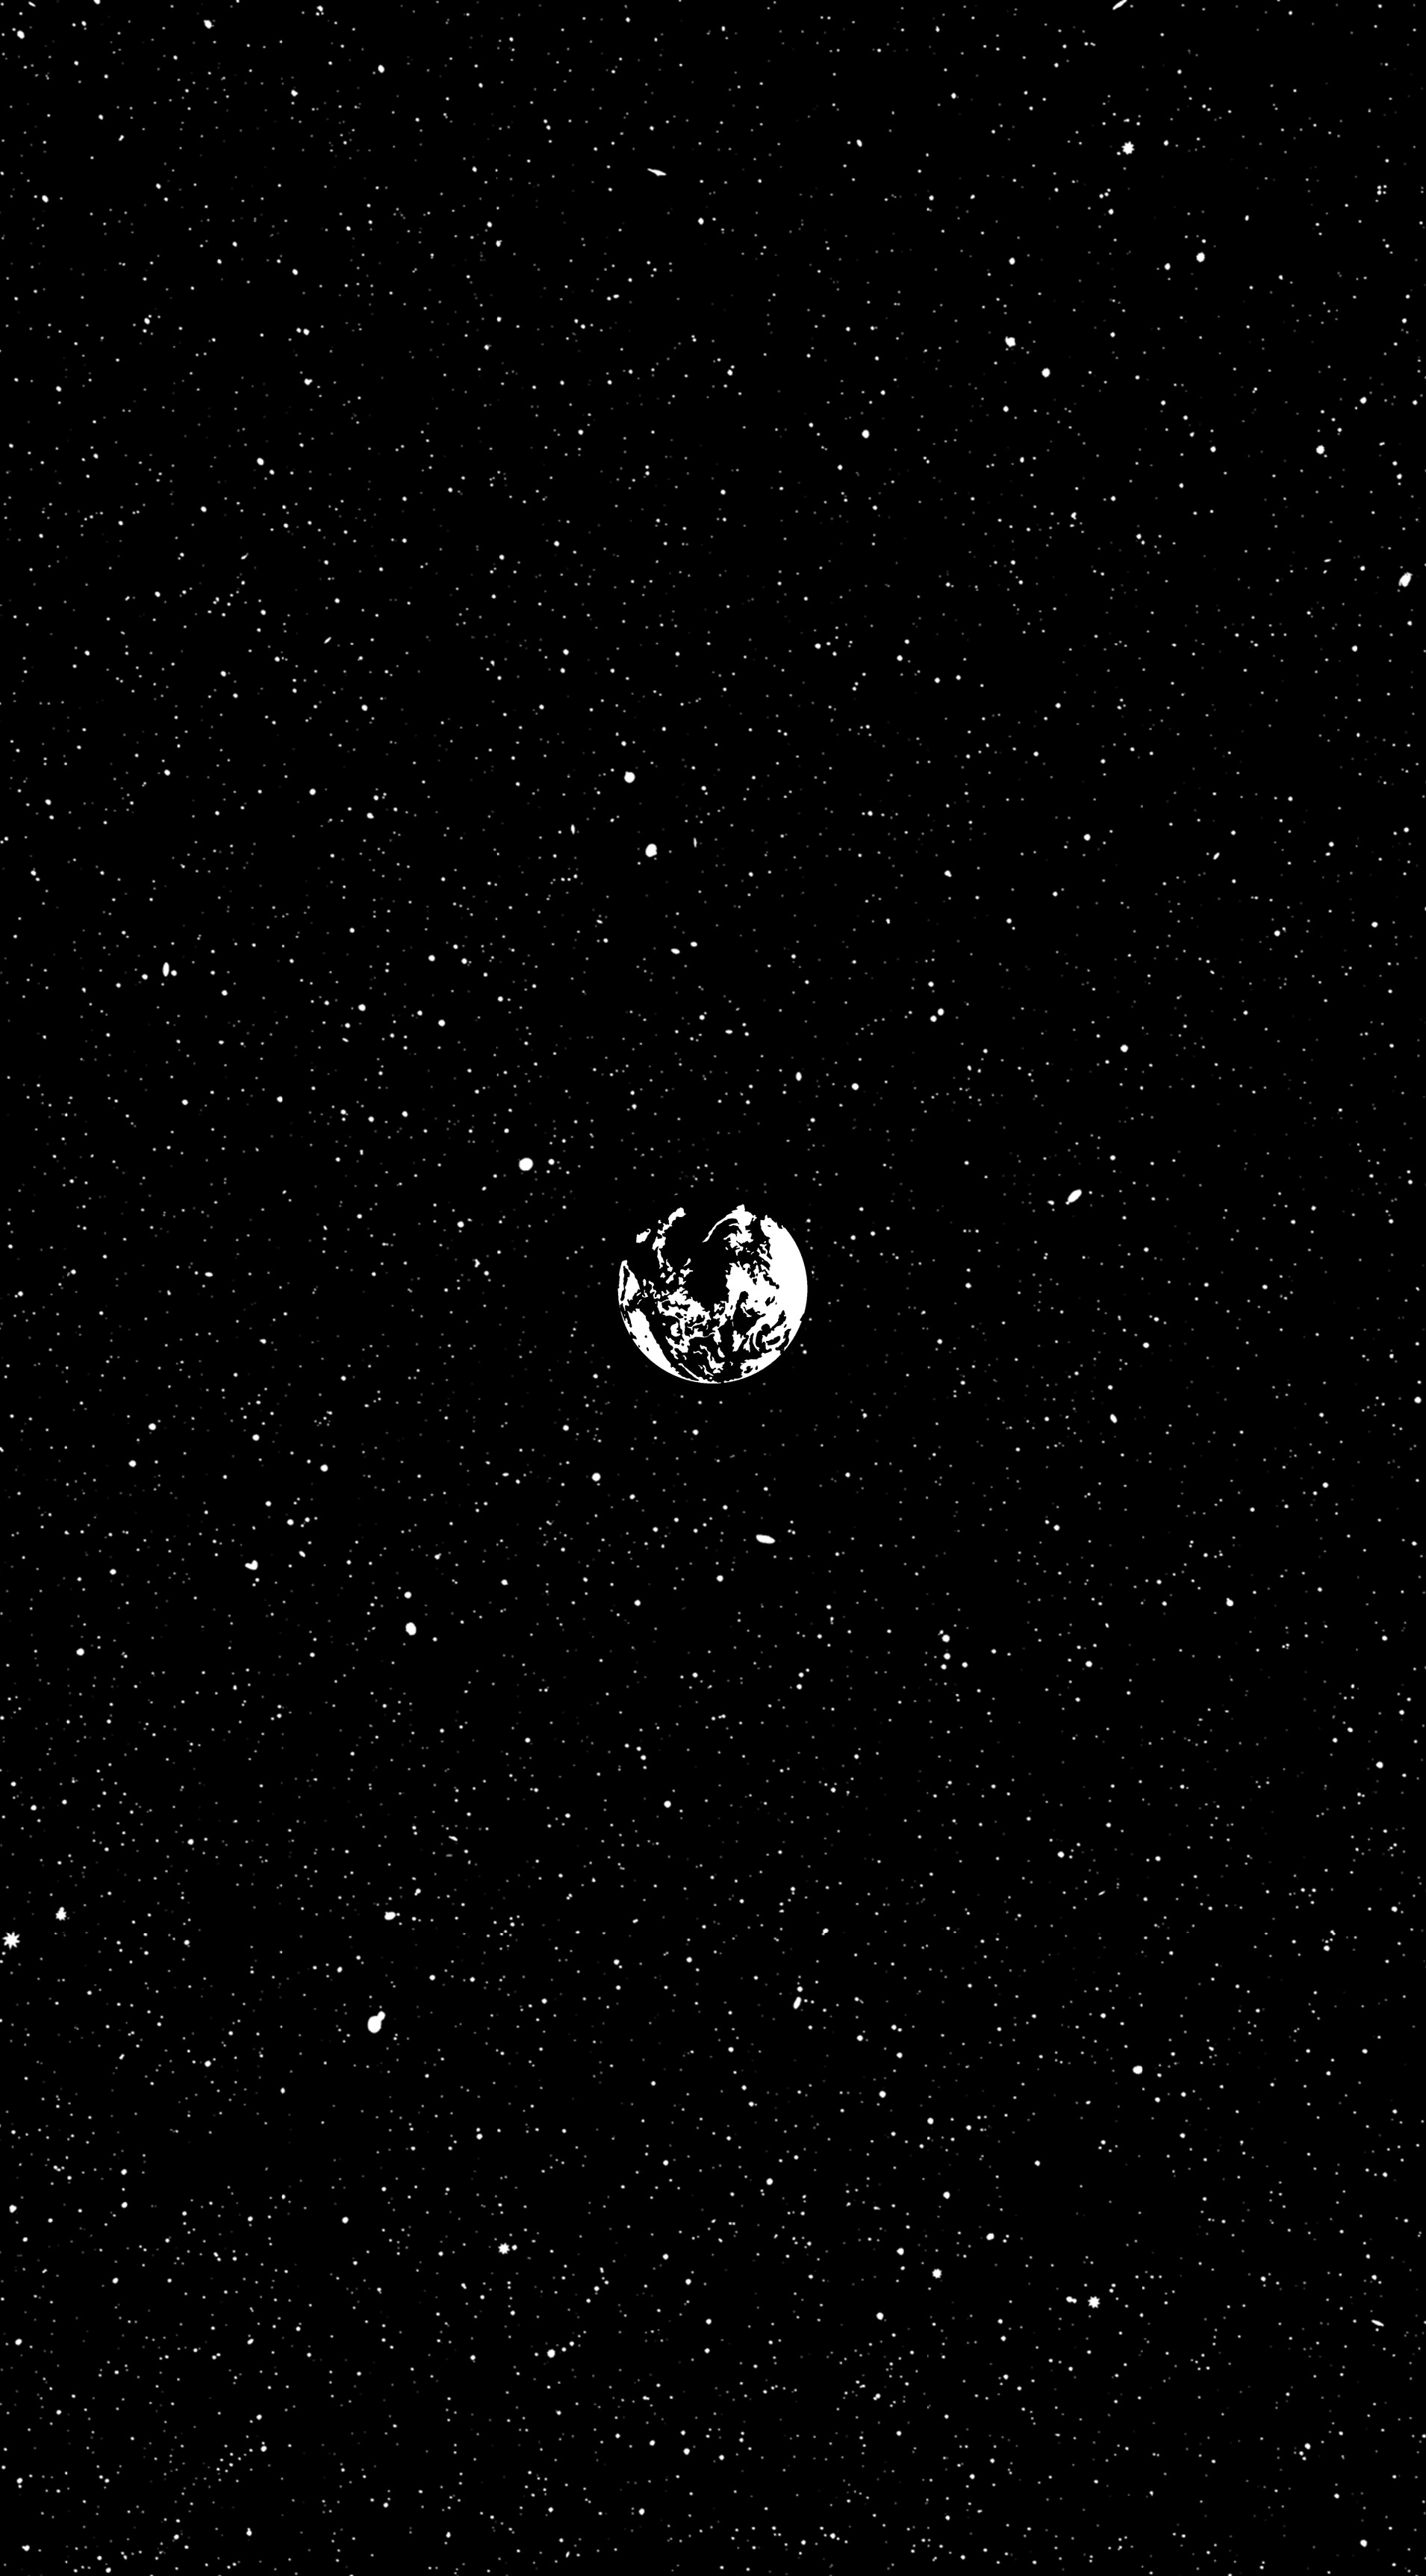 General 1910x3450 space planet minimalism fan art